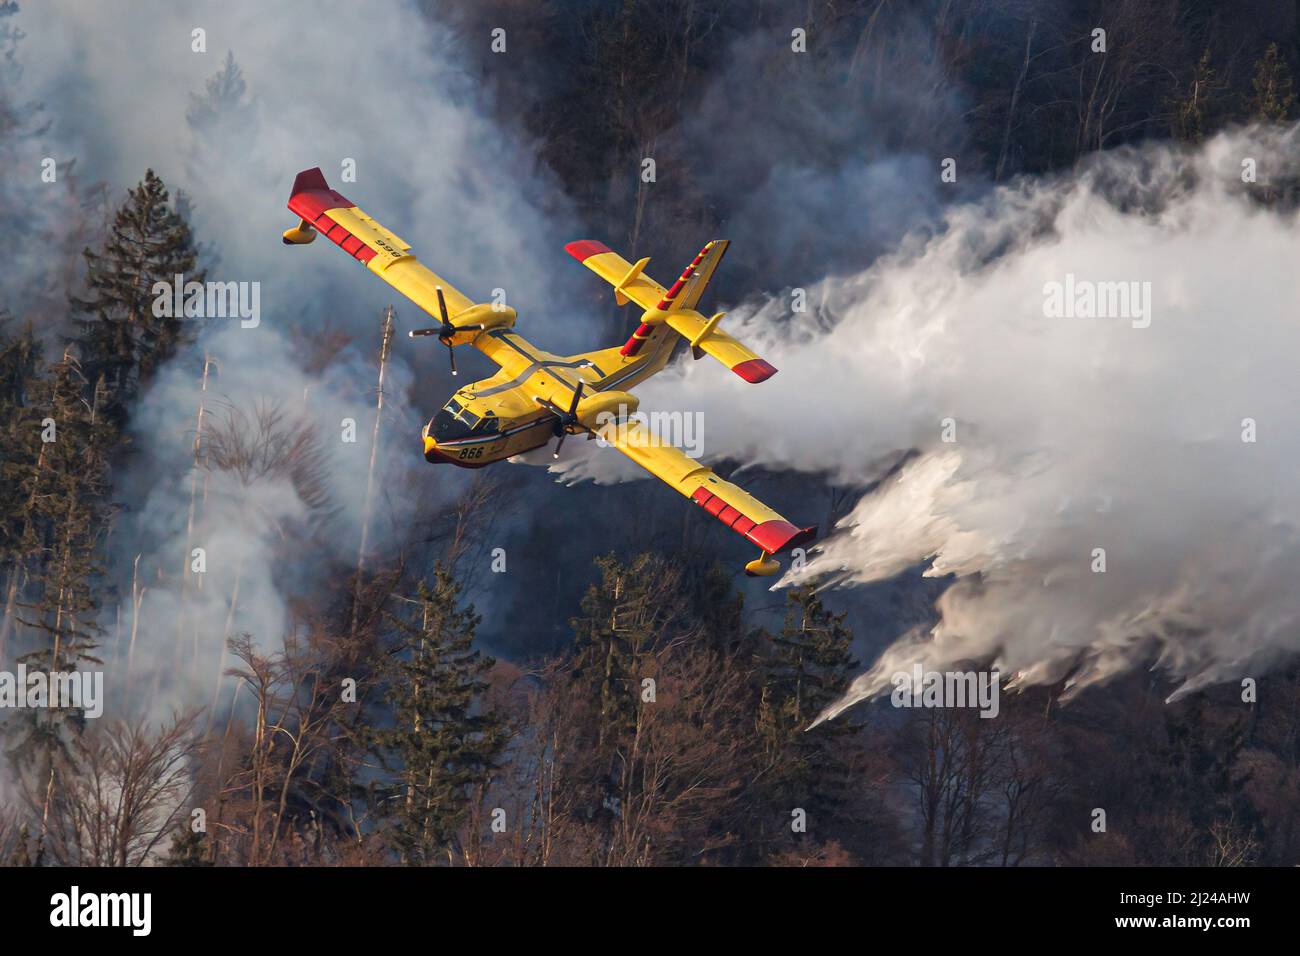 Preddvor, Slovenia, 29/03/2022, Ein kroatisches Canadair CL-415- Löschflugzeug stürzt bei einem Waldbrand in der Nähe von Preddvor Wasser  ab, nachdem es zur Unterstützung der slowenischen Feuerwehrleute eingesetzt  wurde. Die Ursache eines der größten